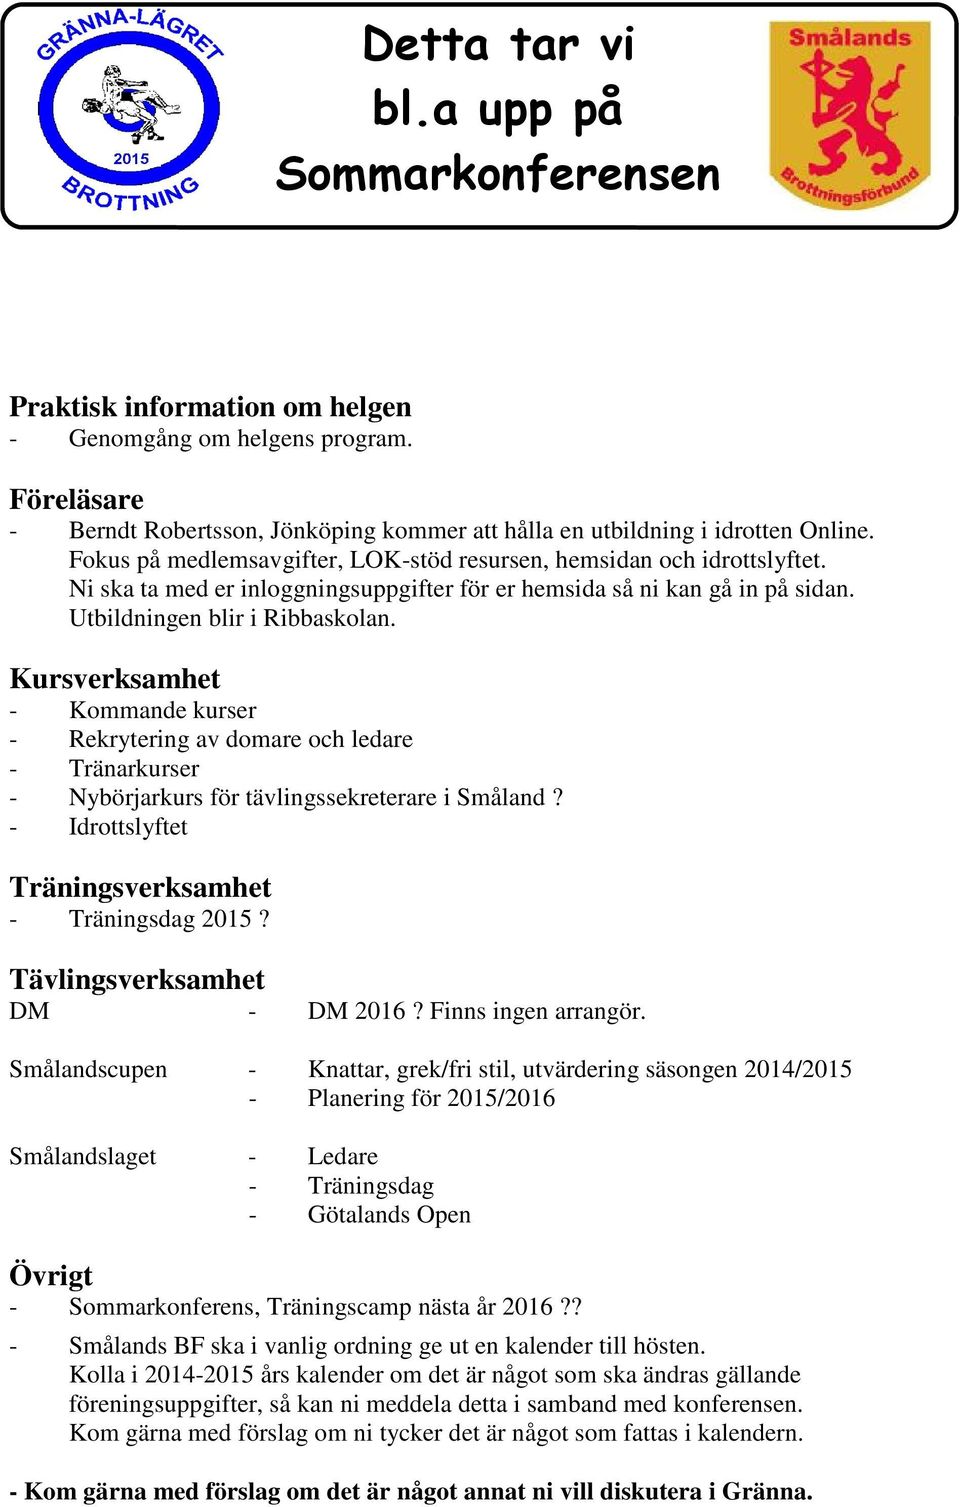 Kursverksamhet - Kommande kurser - Rekrytering av domare och ledare - Tränarkurser - Nybörjarkurs för tävlingssekreterare i Småland? - Idrottslyftet Träningsverksamhet - Träningsdag 2015?